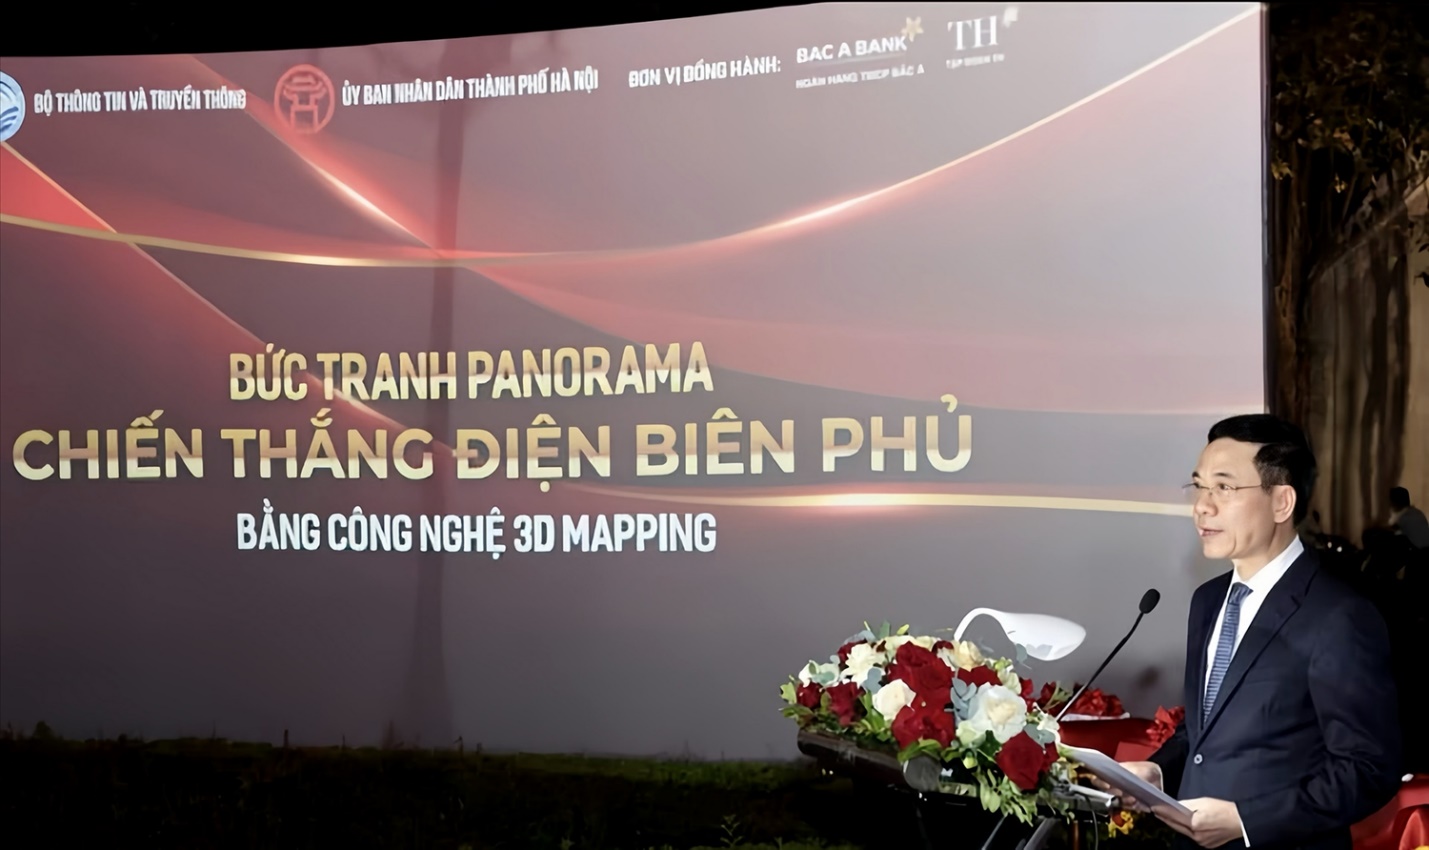 Bức tranh “Chiến dịch Điện Biên Phủ” rộng 3.000m2 đến với người dân thủ đô bằng công nghệ 3D mapping- Ảnh 4.